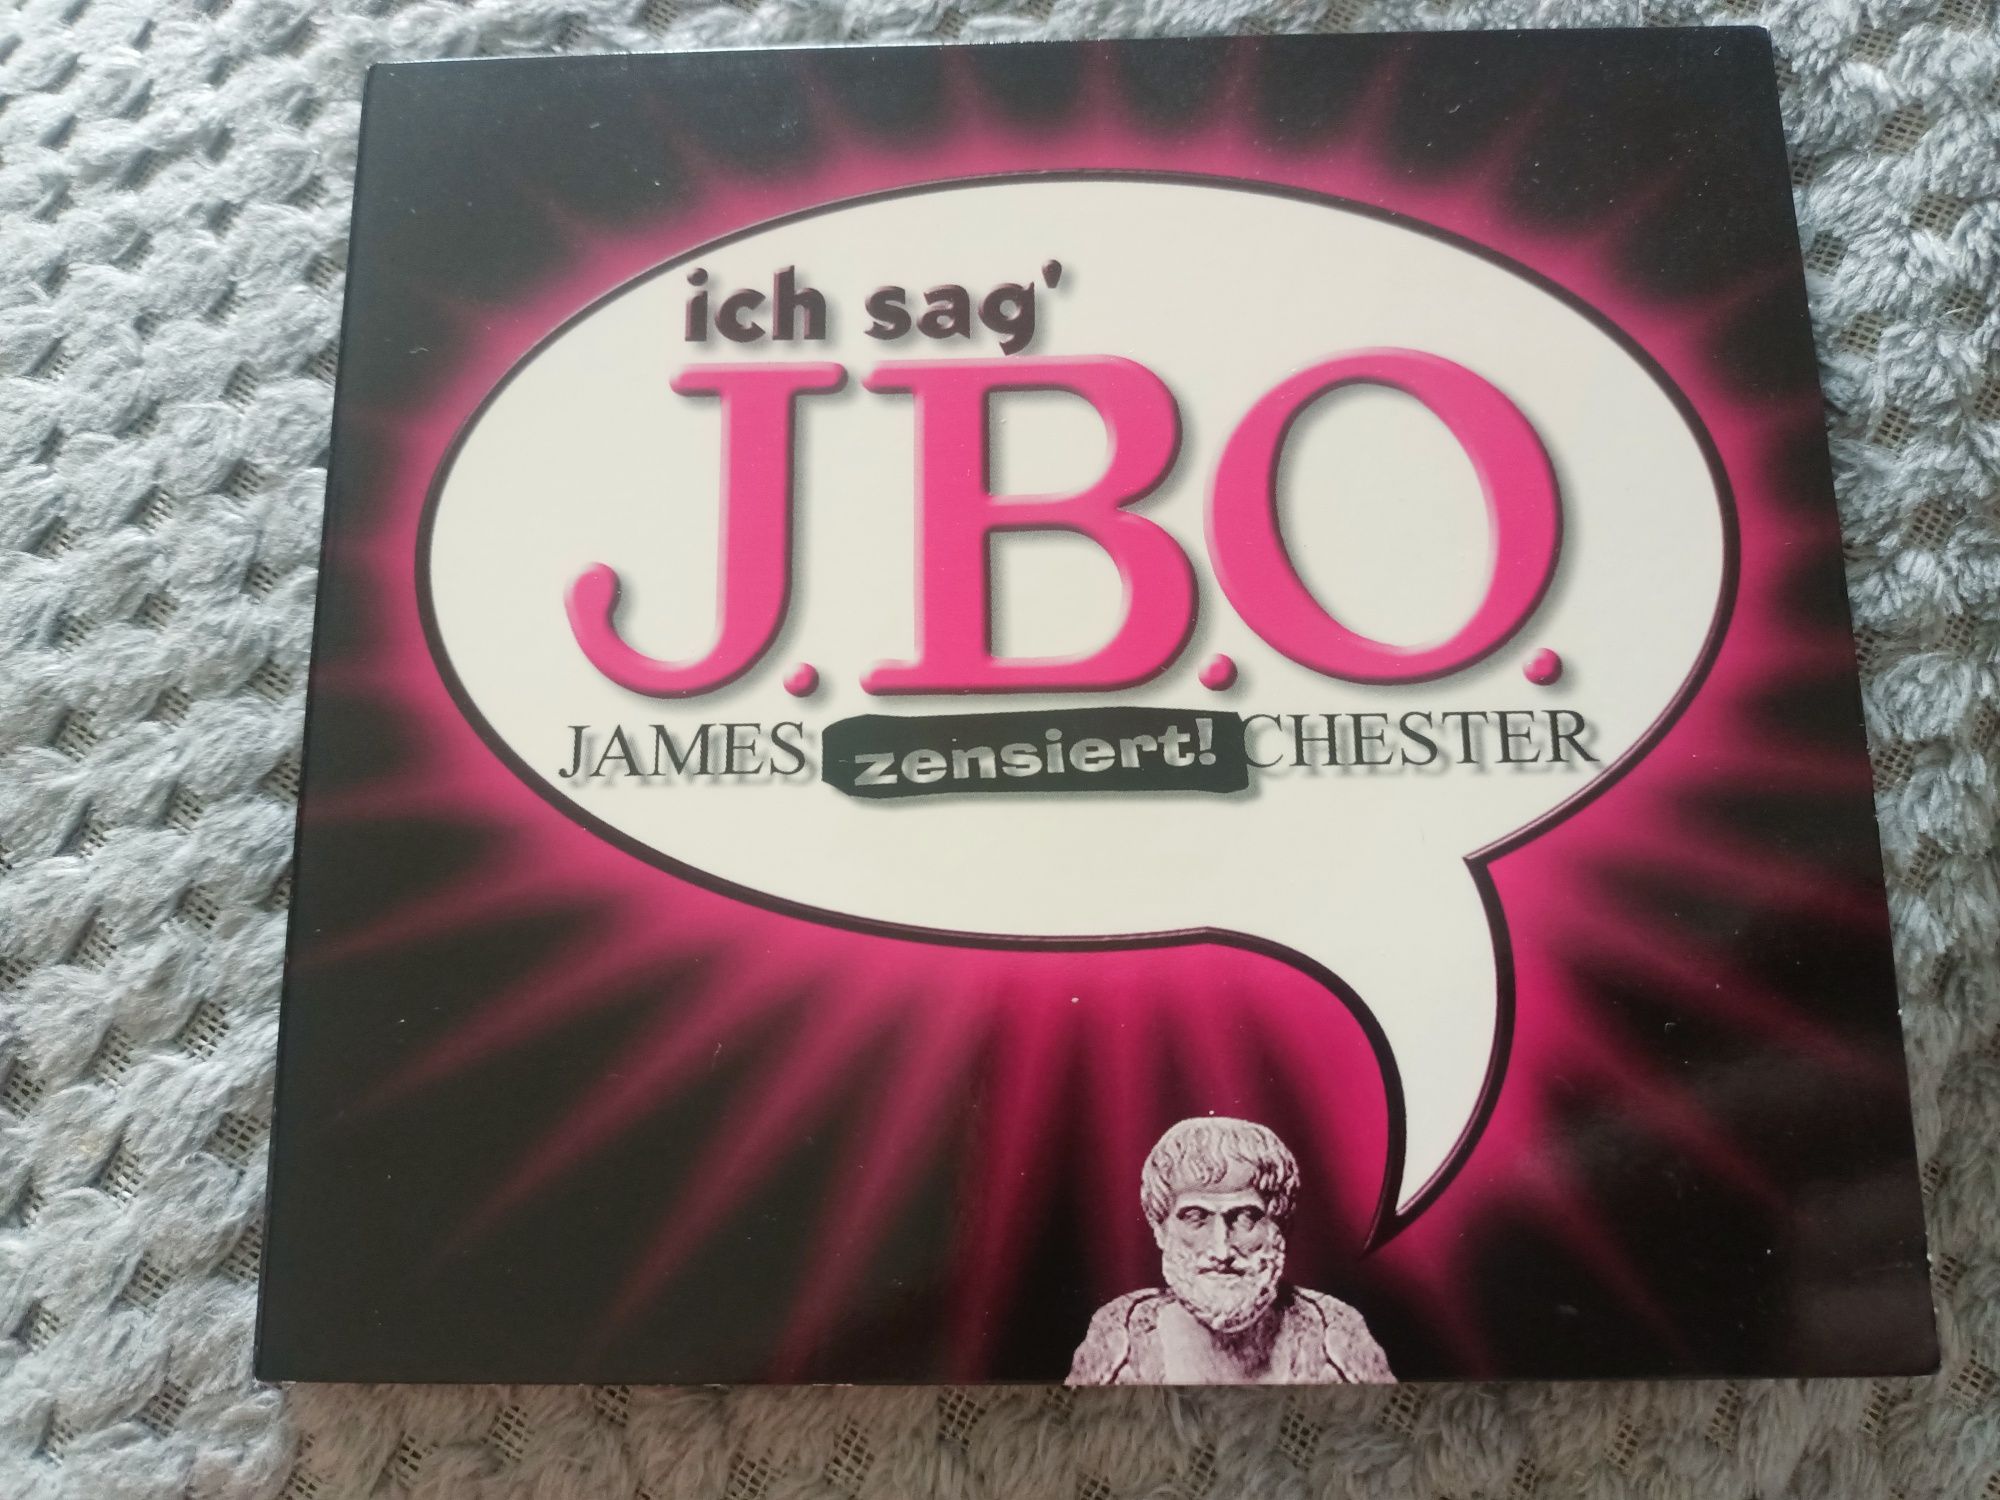 J.B.O. - Ich Sag' J.B.O. (CD, Maxi, Enh)(vg+)